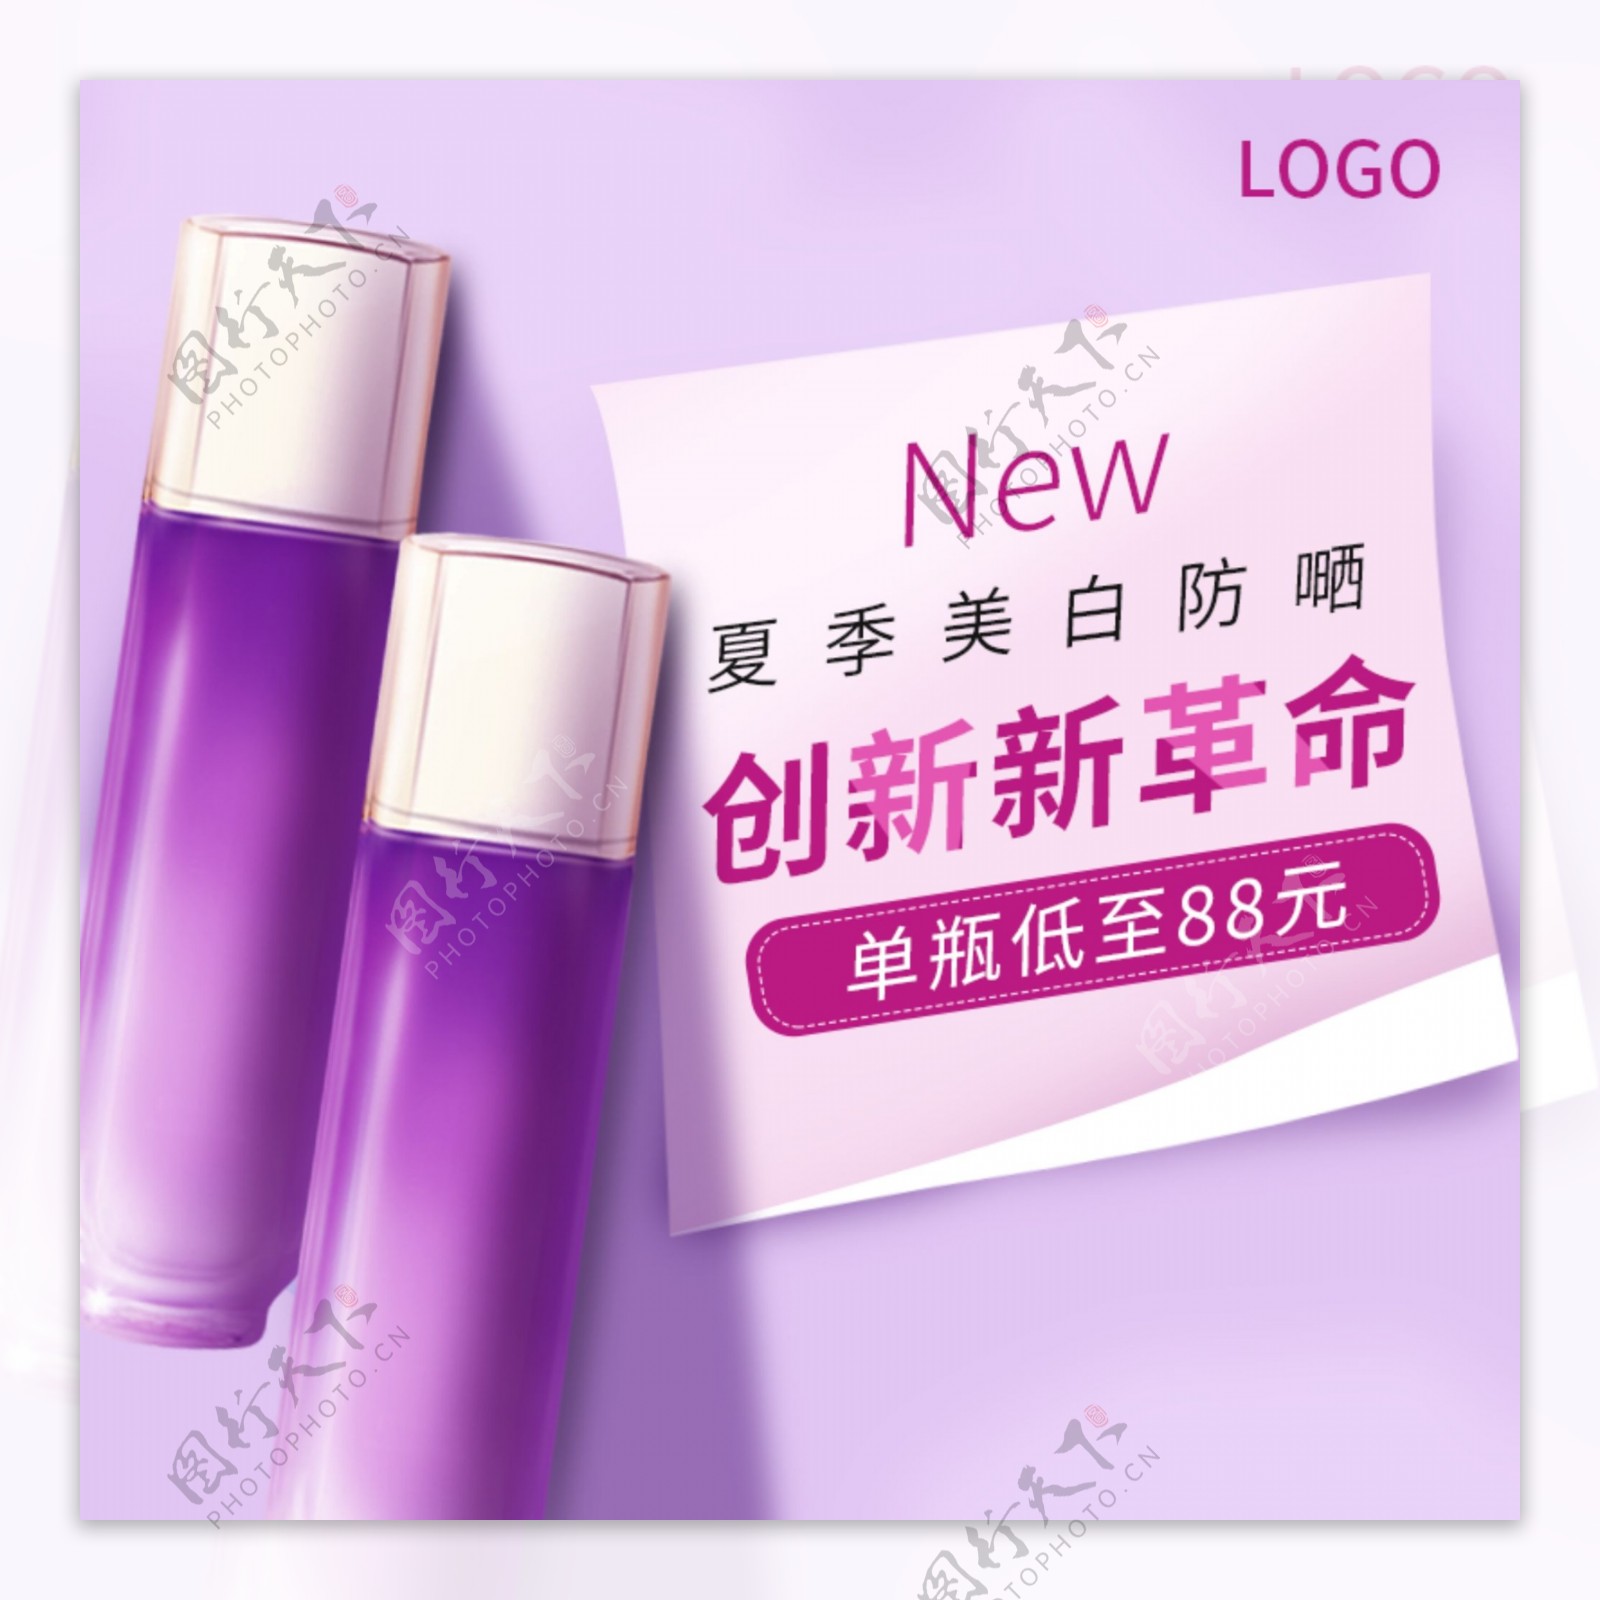 化妆品护肤品紫色促销主图直通车电商淘宝